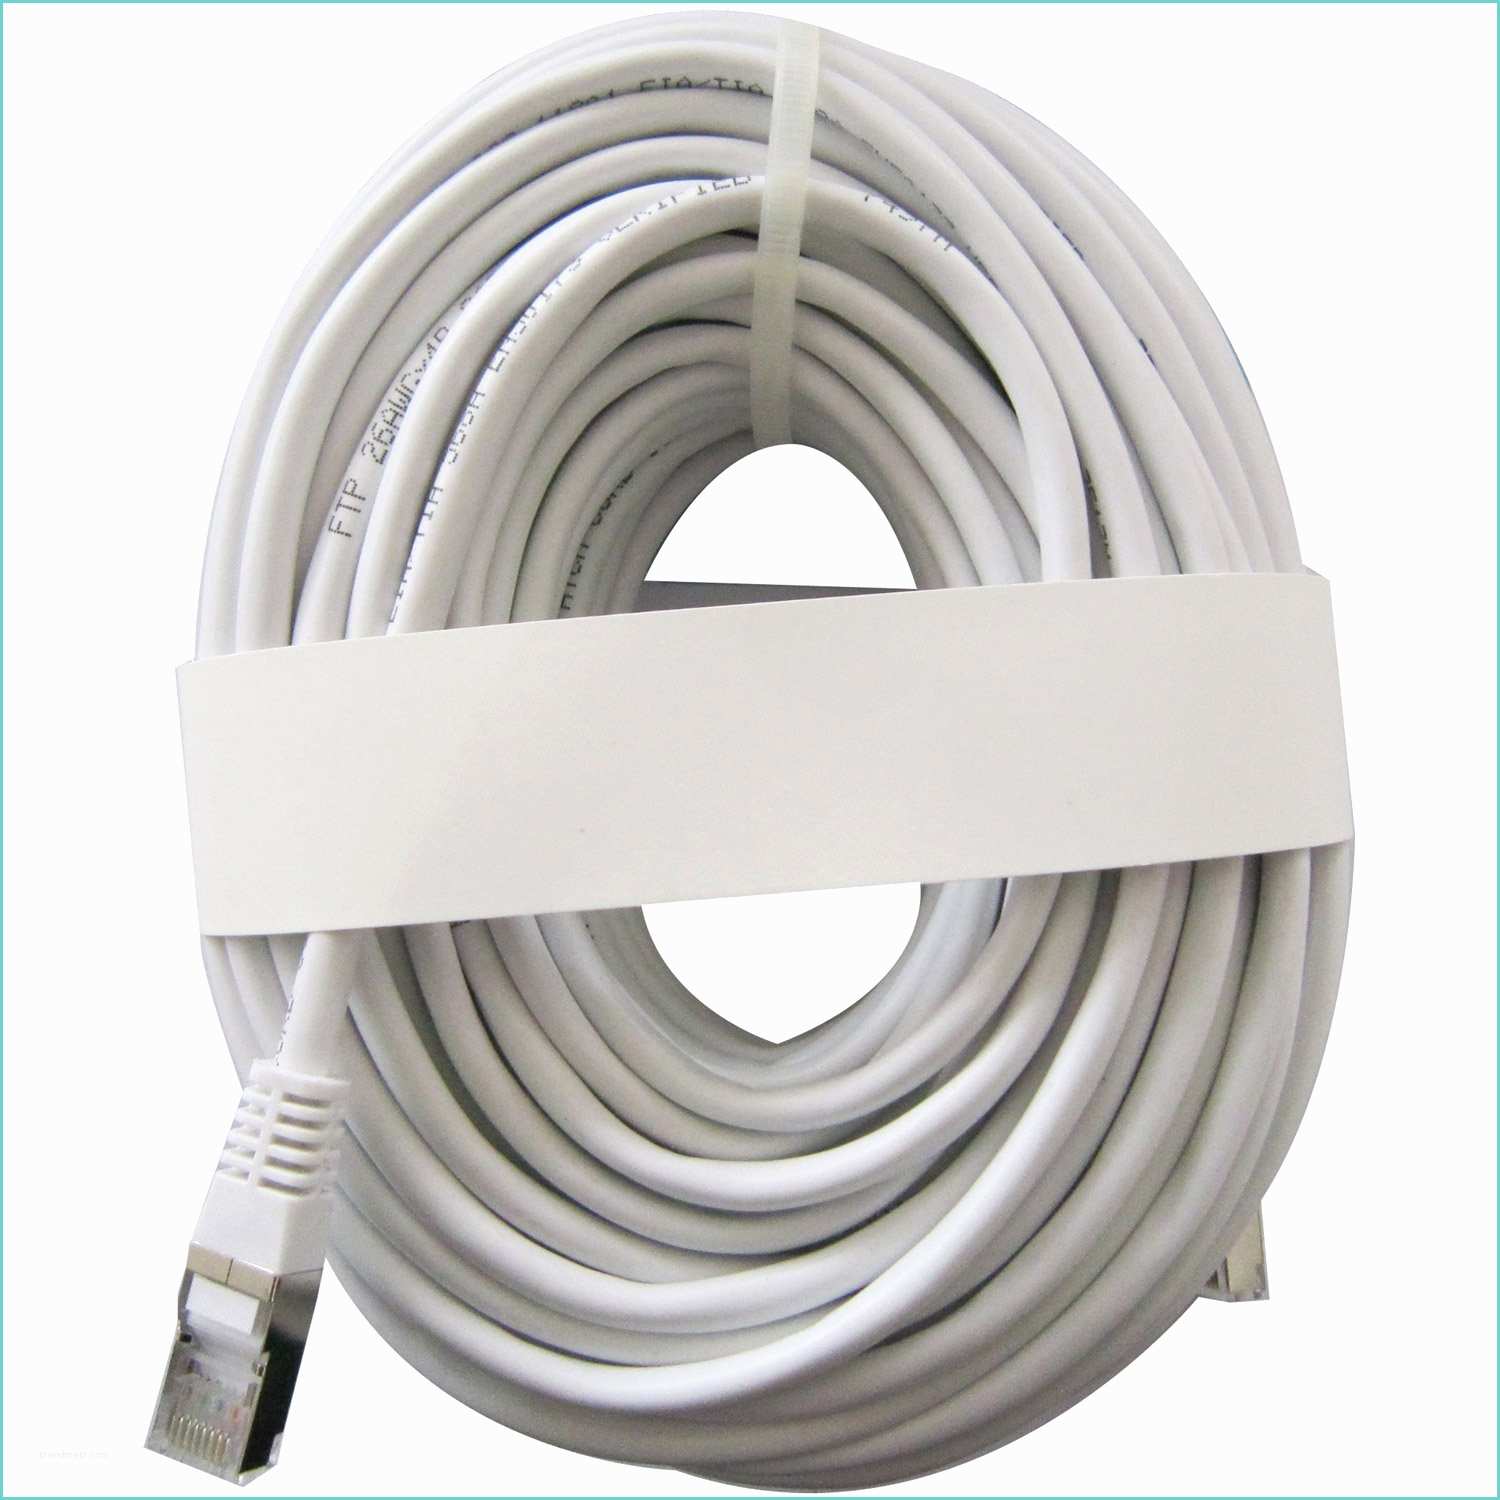 Leroy Merlin Serre Cable Câble Rj45 Catégorie 5 Mâle Mâle Evology 25 M